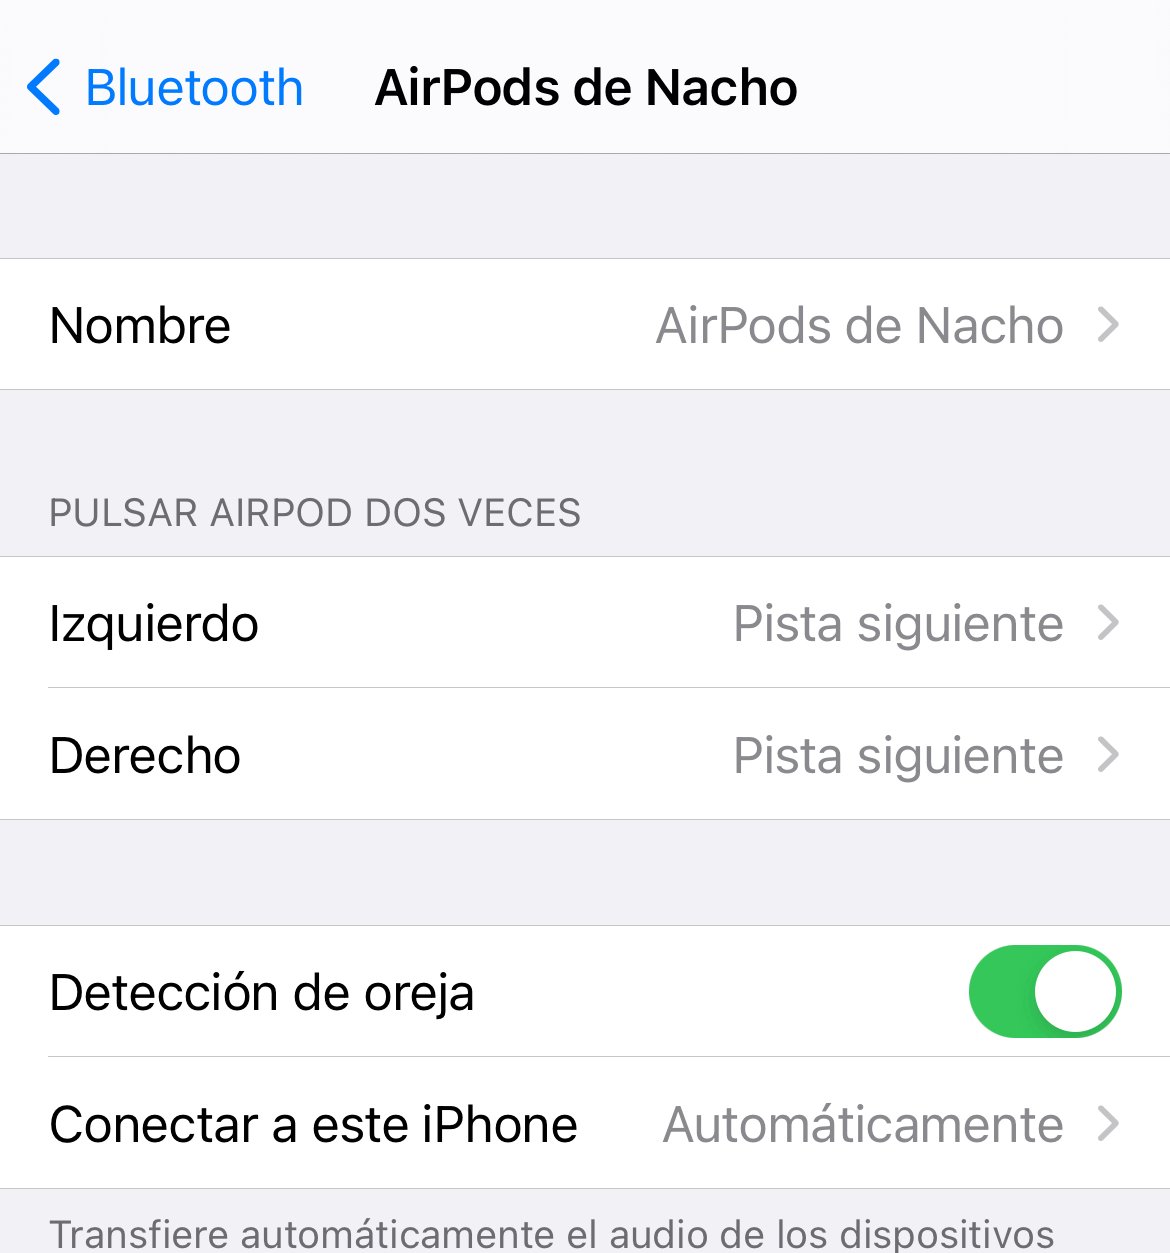 9 trucos y secretos para utilizar los AirPods de Apple